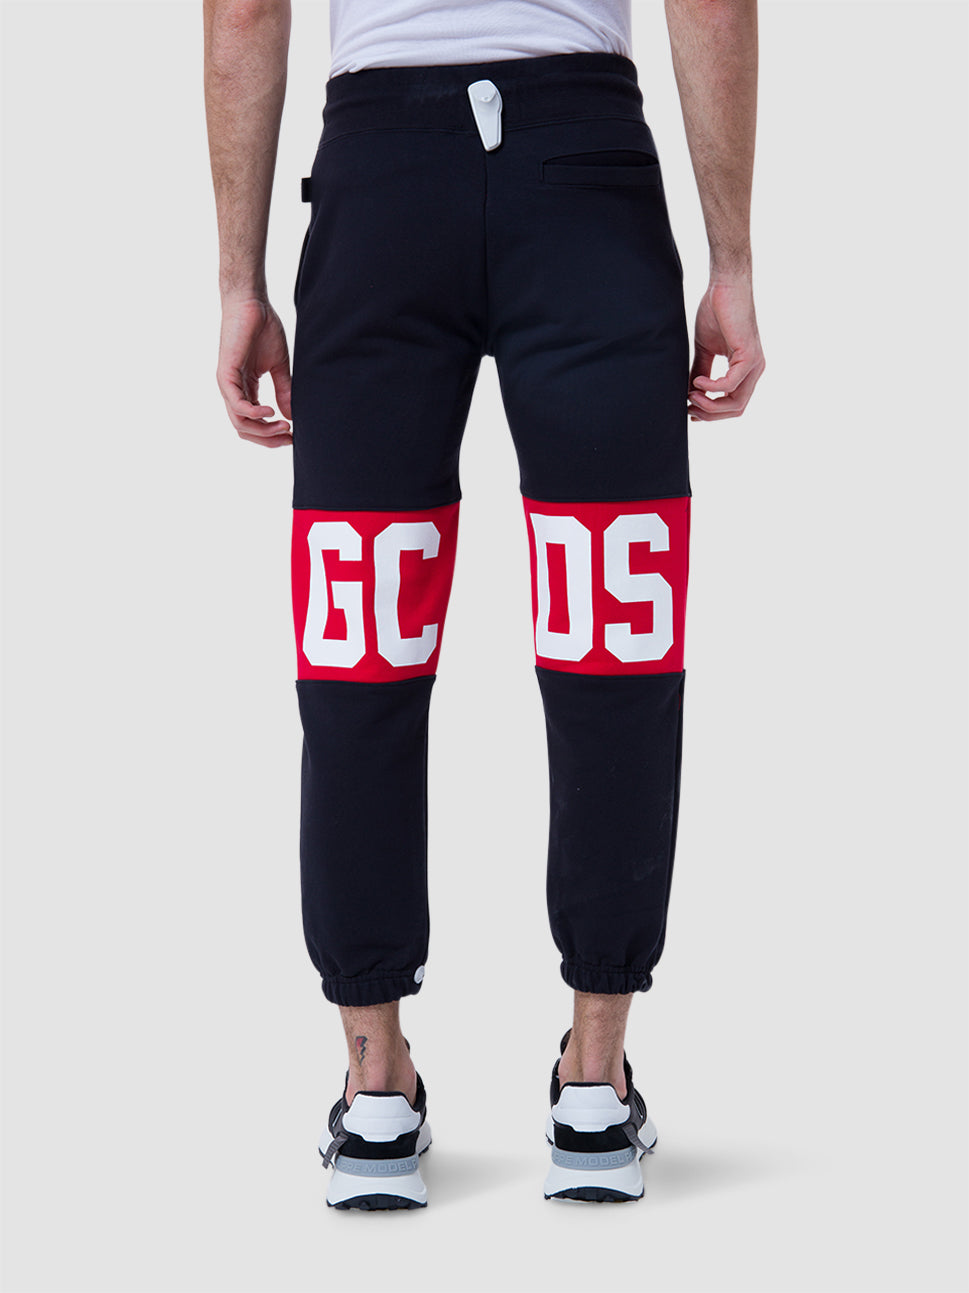 gcds gcds cotton logo black pants